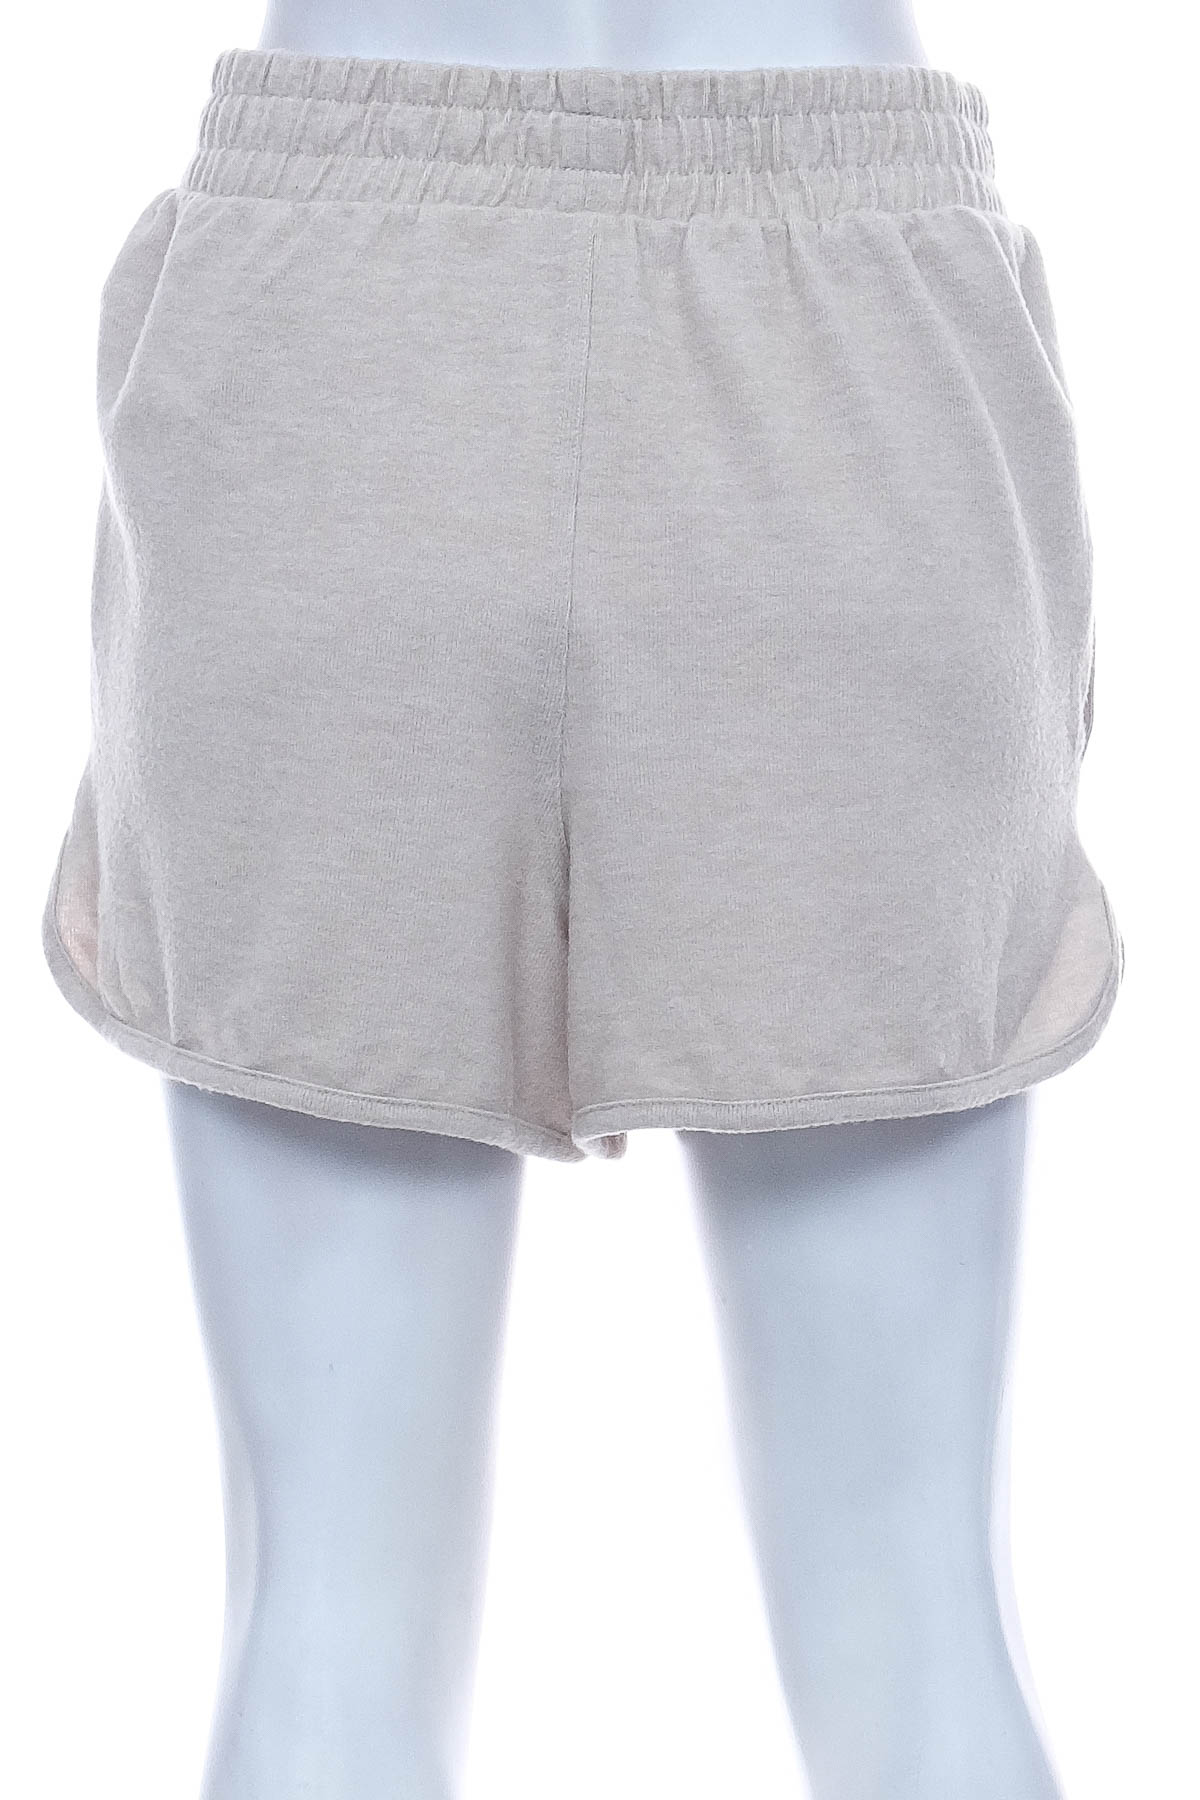 Female shorts - Body - 1